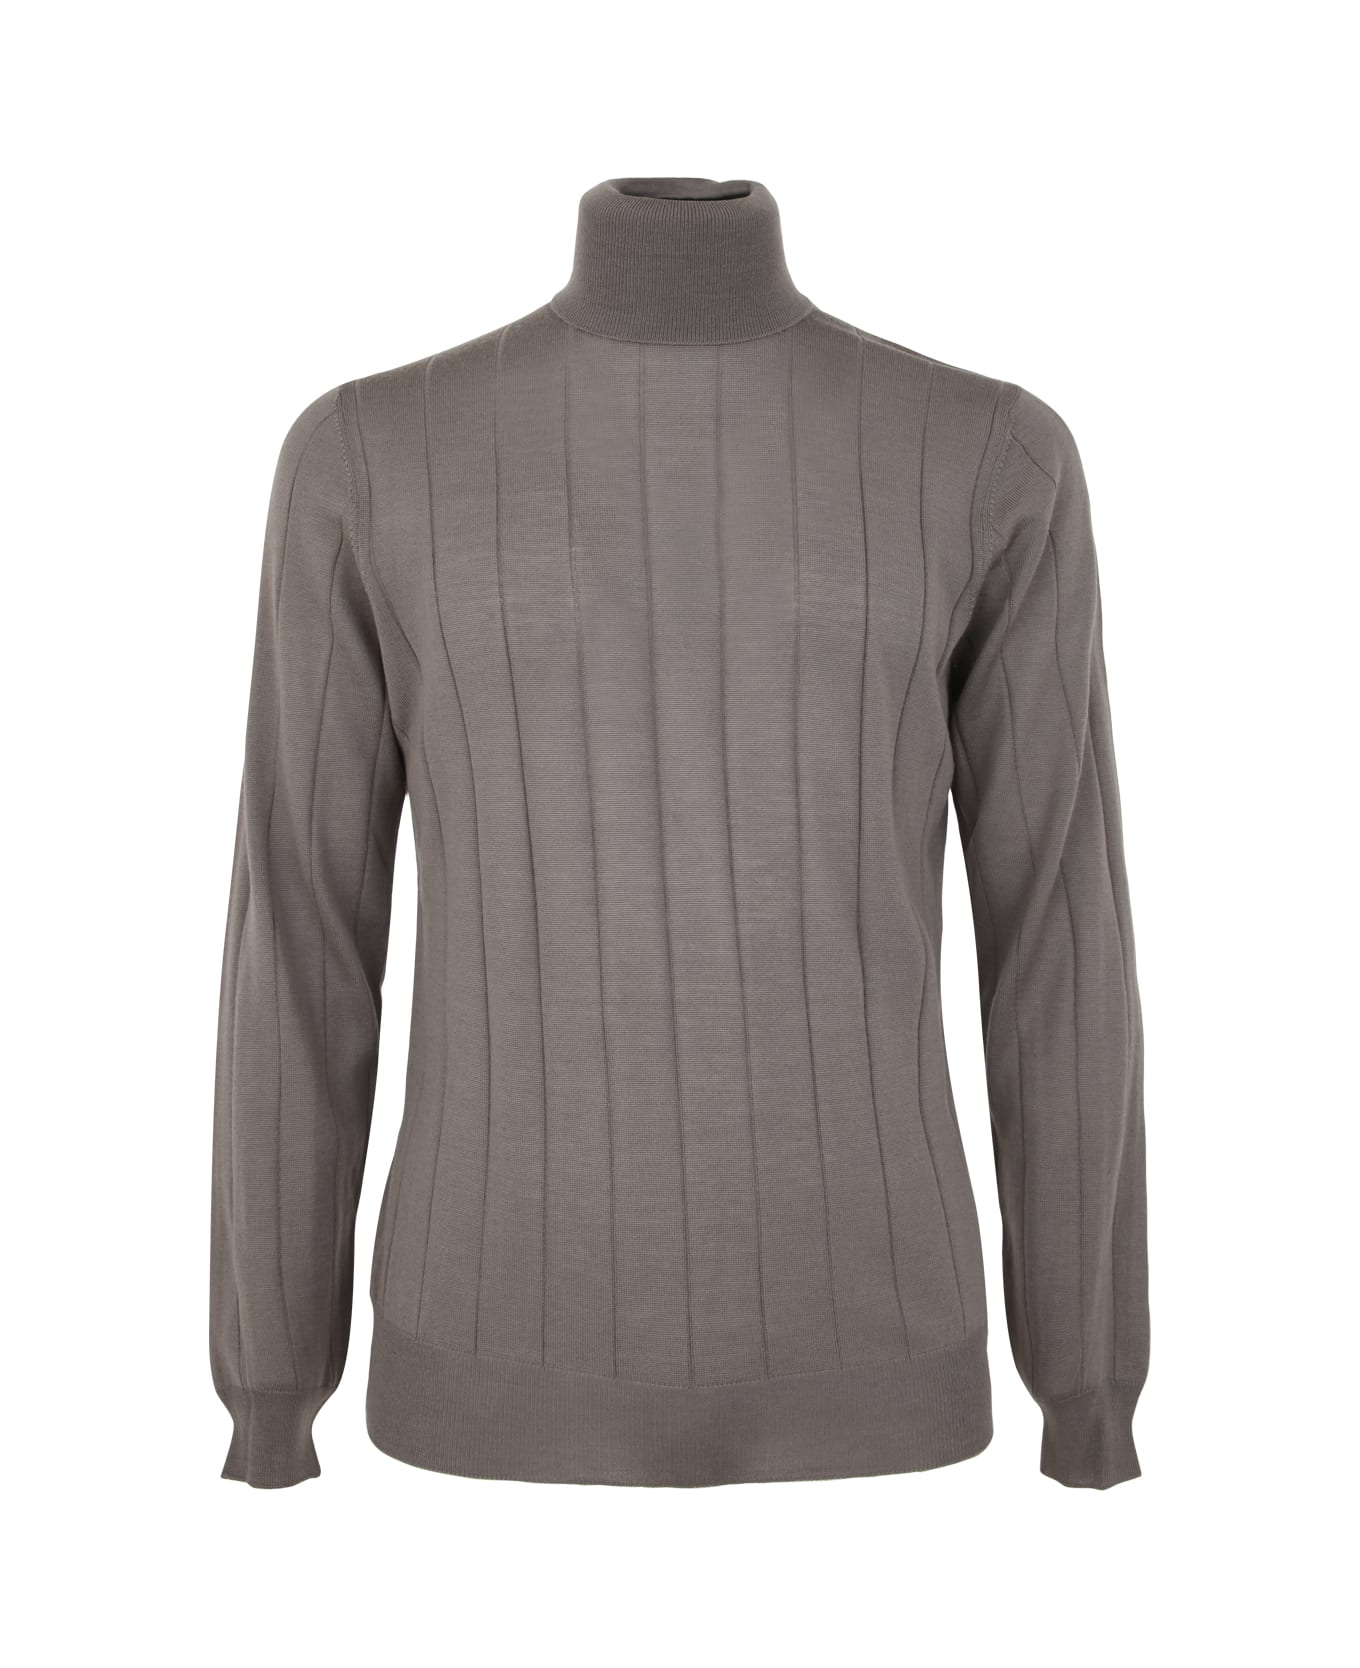 Filippo De Laurentiis Royal Merino Long Sleeves Turtle Neck Sweater - Steel ニットウェア